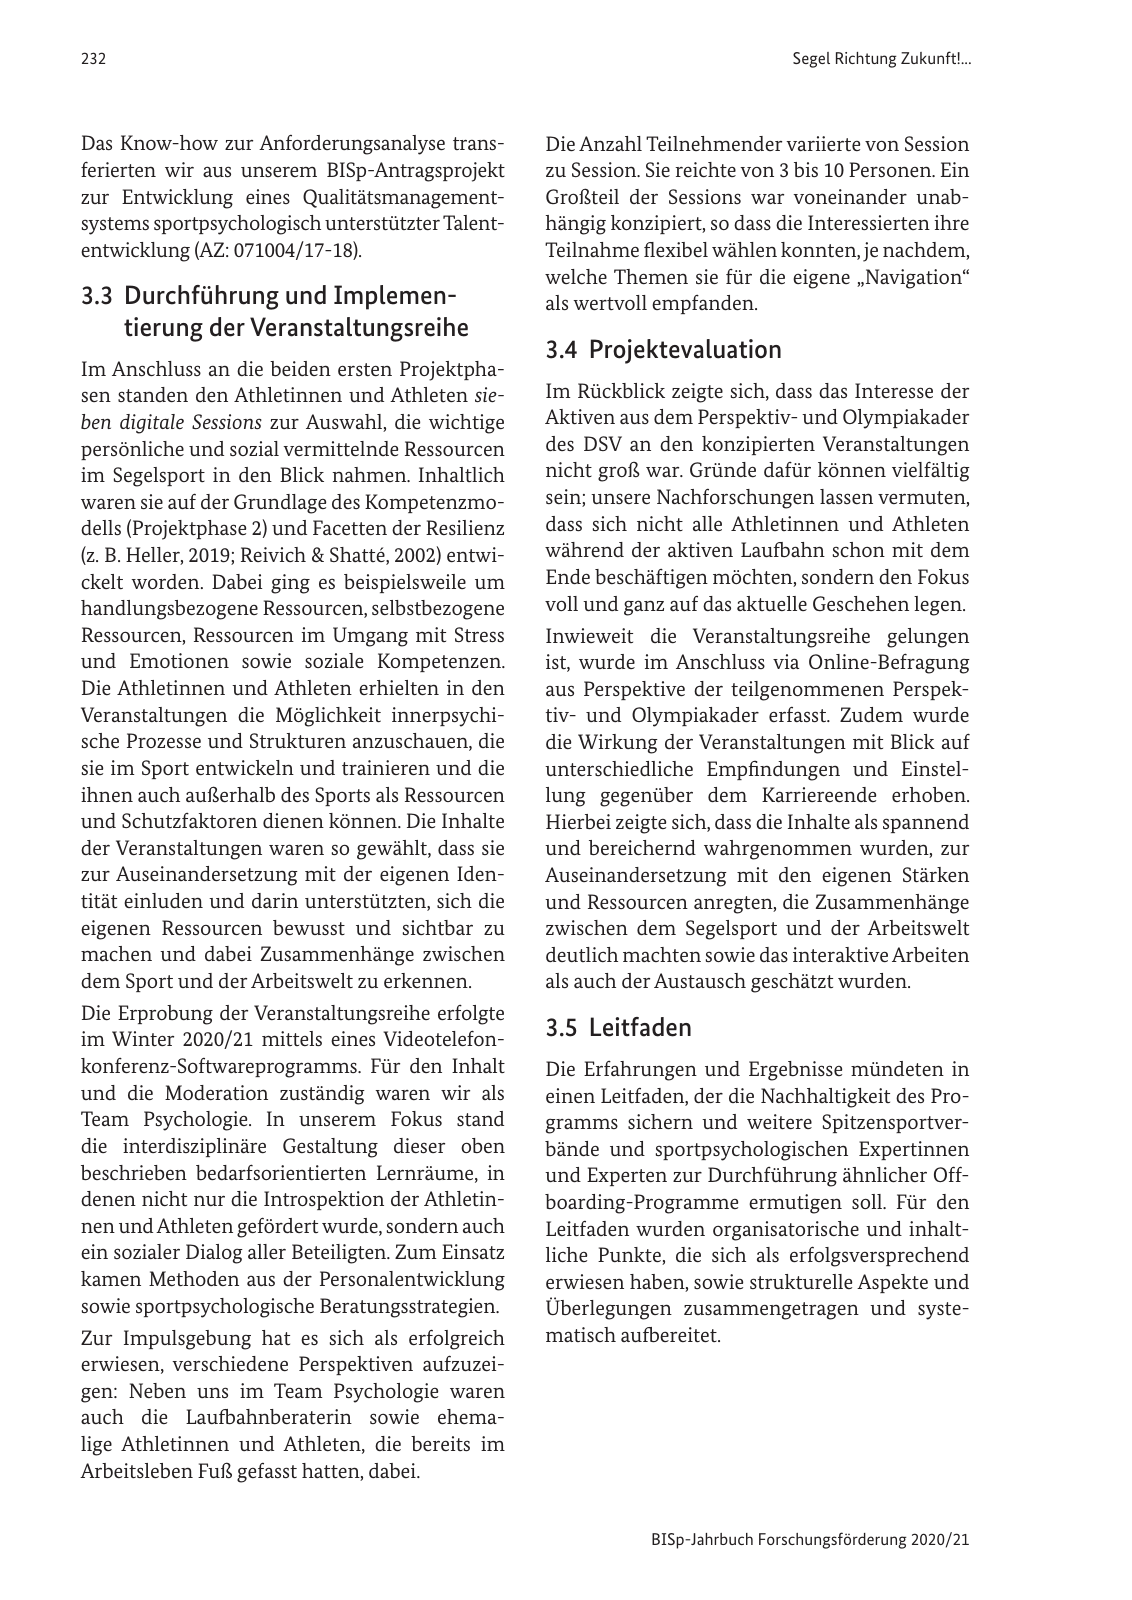 Vorschau BISp-Jahrbuch 2020/21 Seite 234